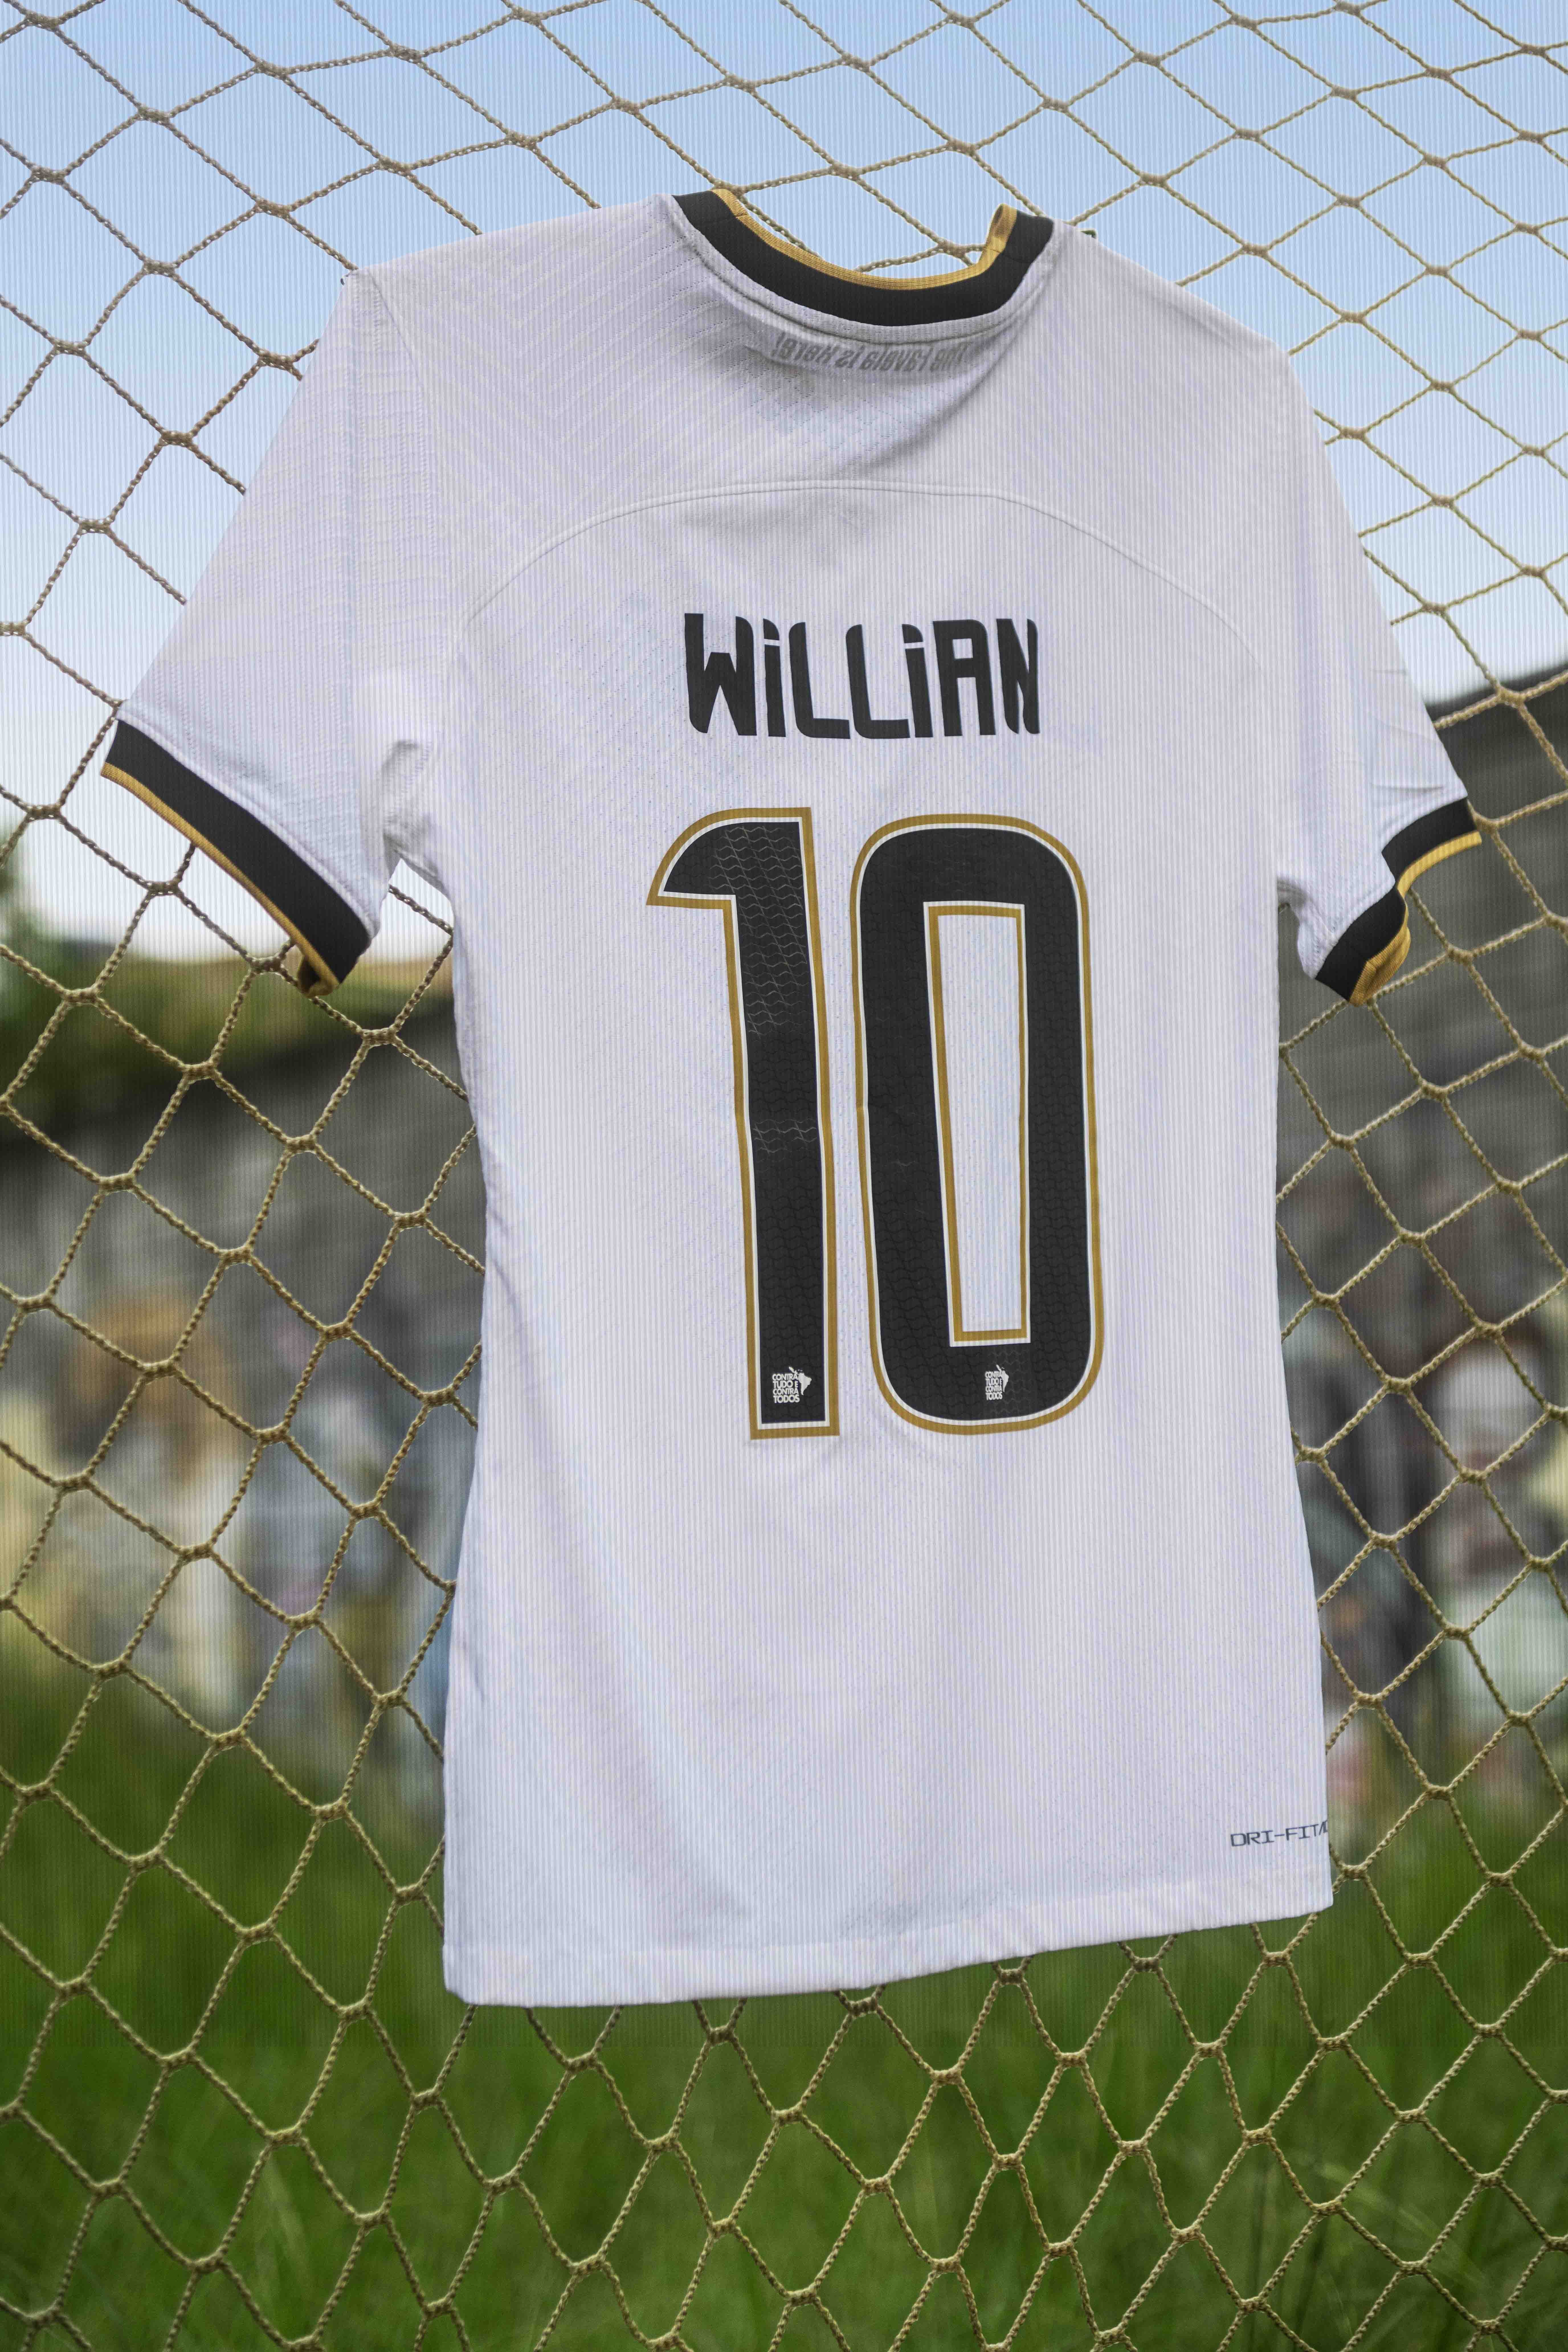 Camisa 10 do Timão pertence a Willian (Foto: Divulgação: Nike)